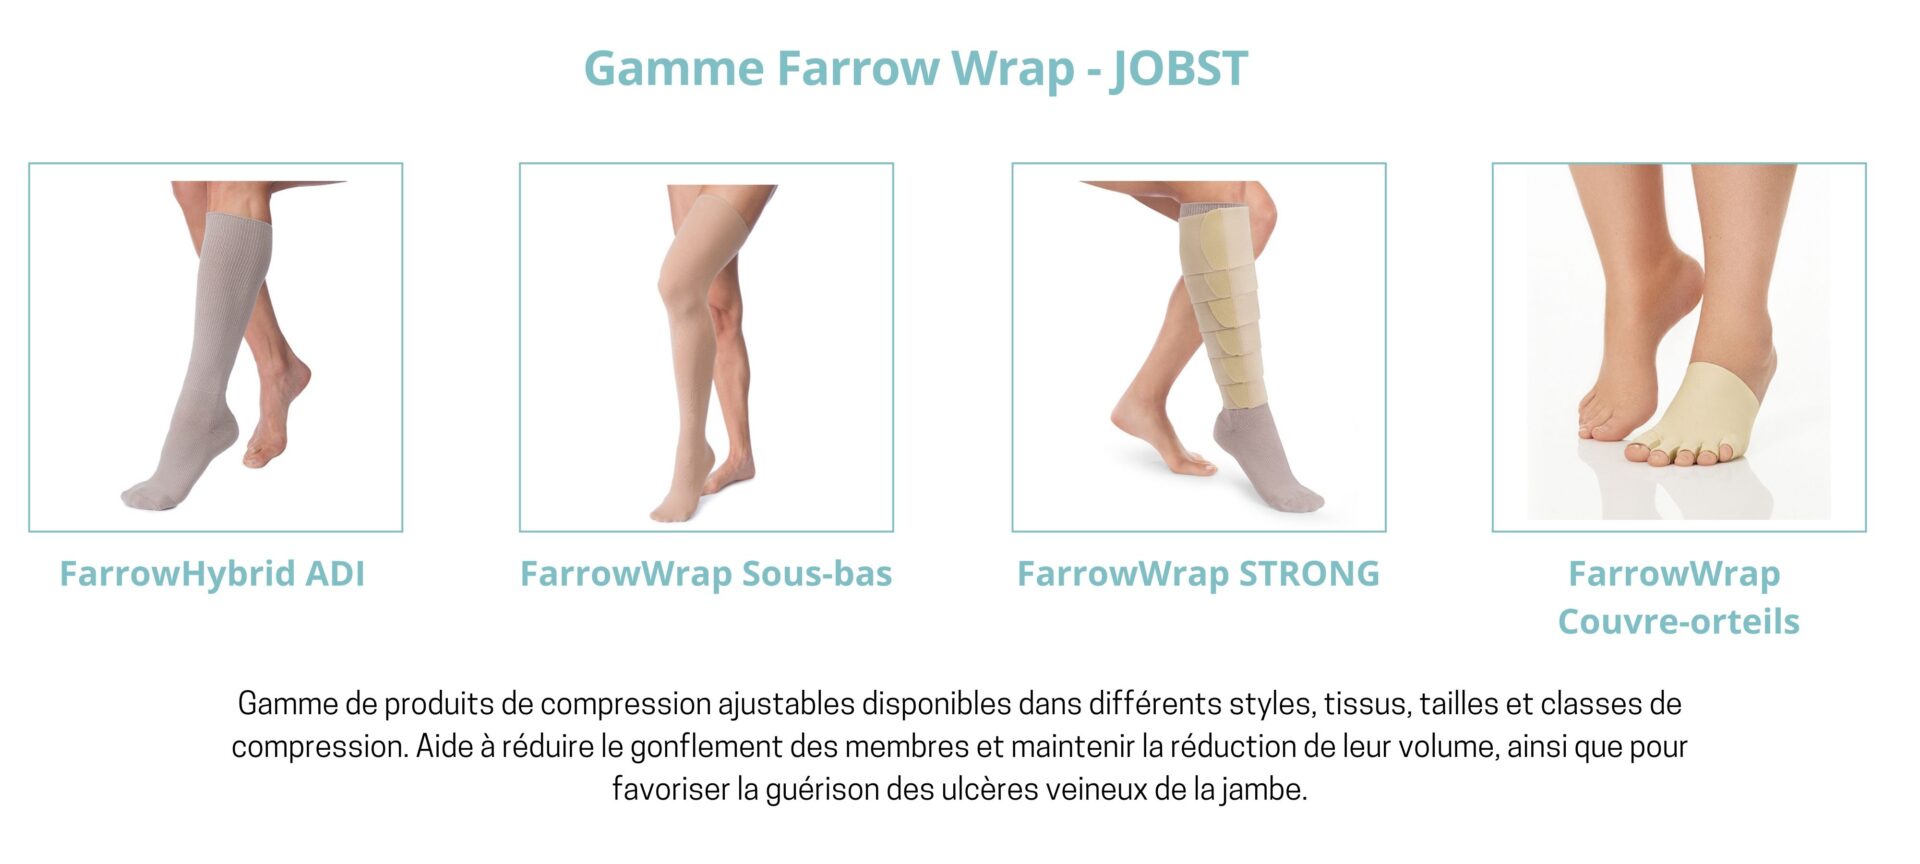 Gamme Farrow Wrap - Jobst - Membre inférieur - espace md santé